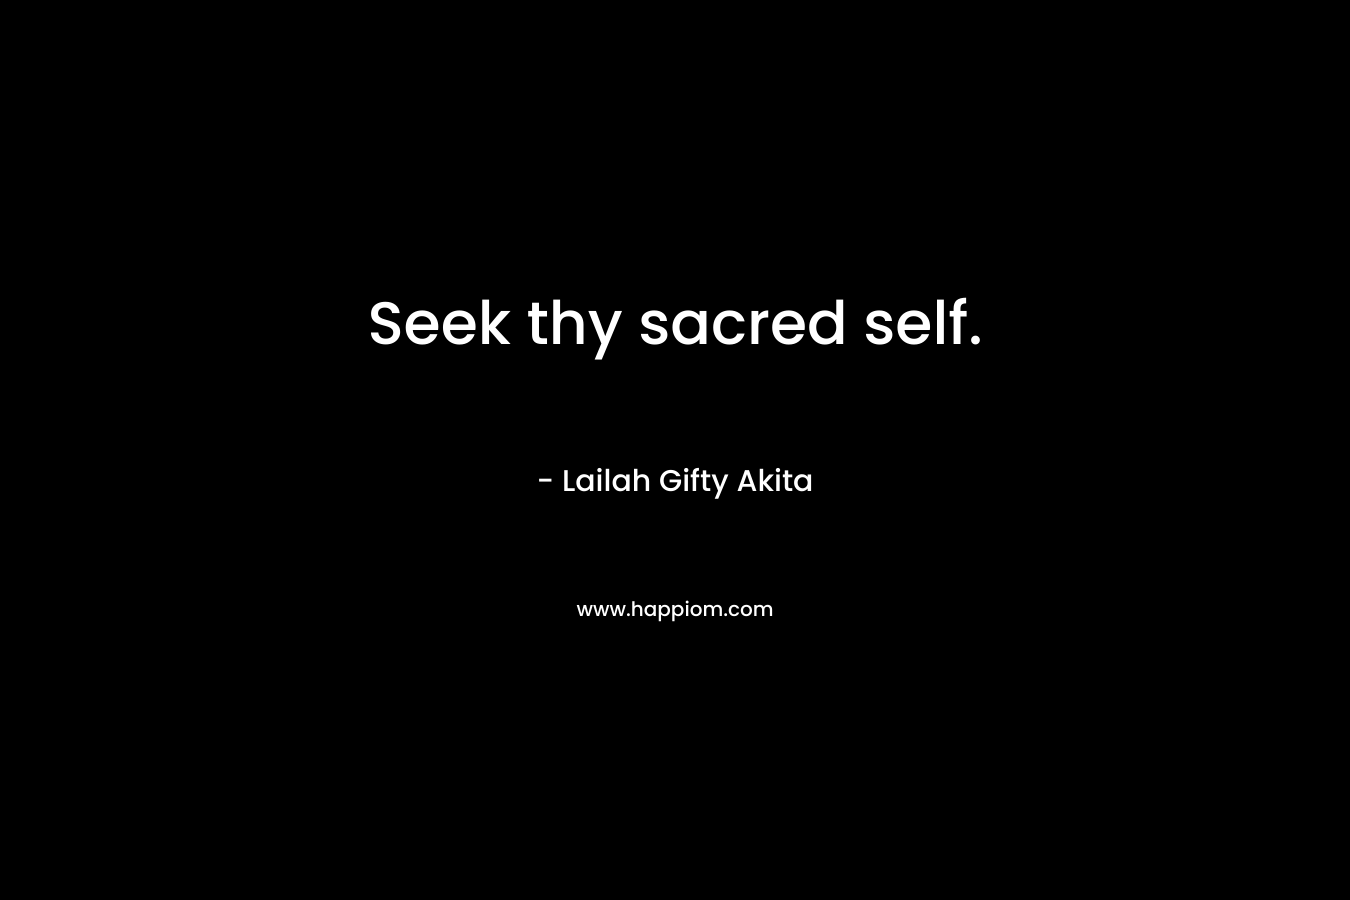 Seek thy sacred self.